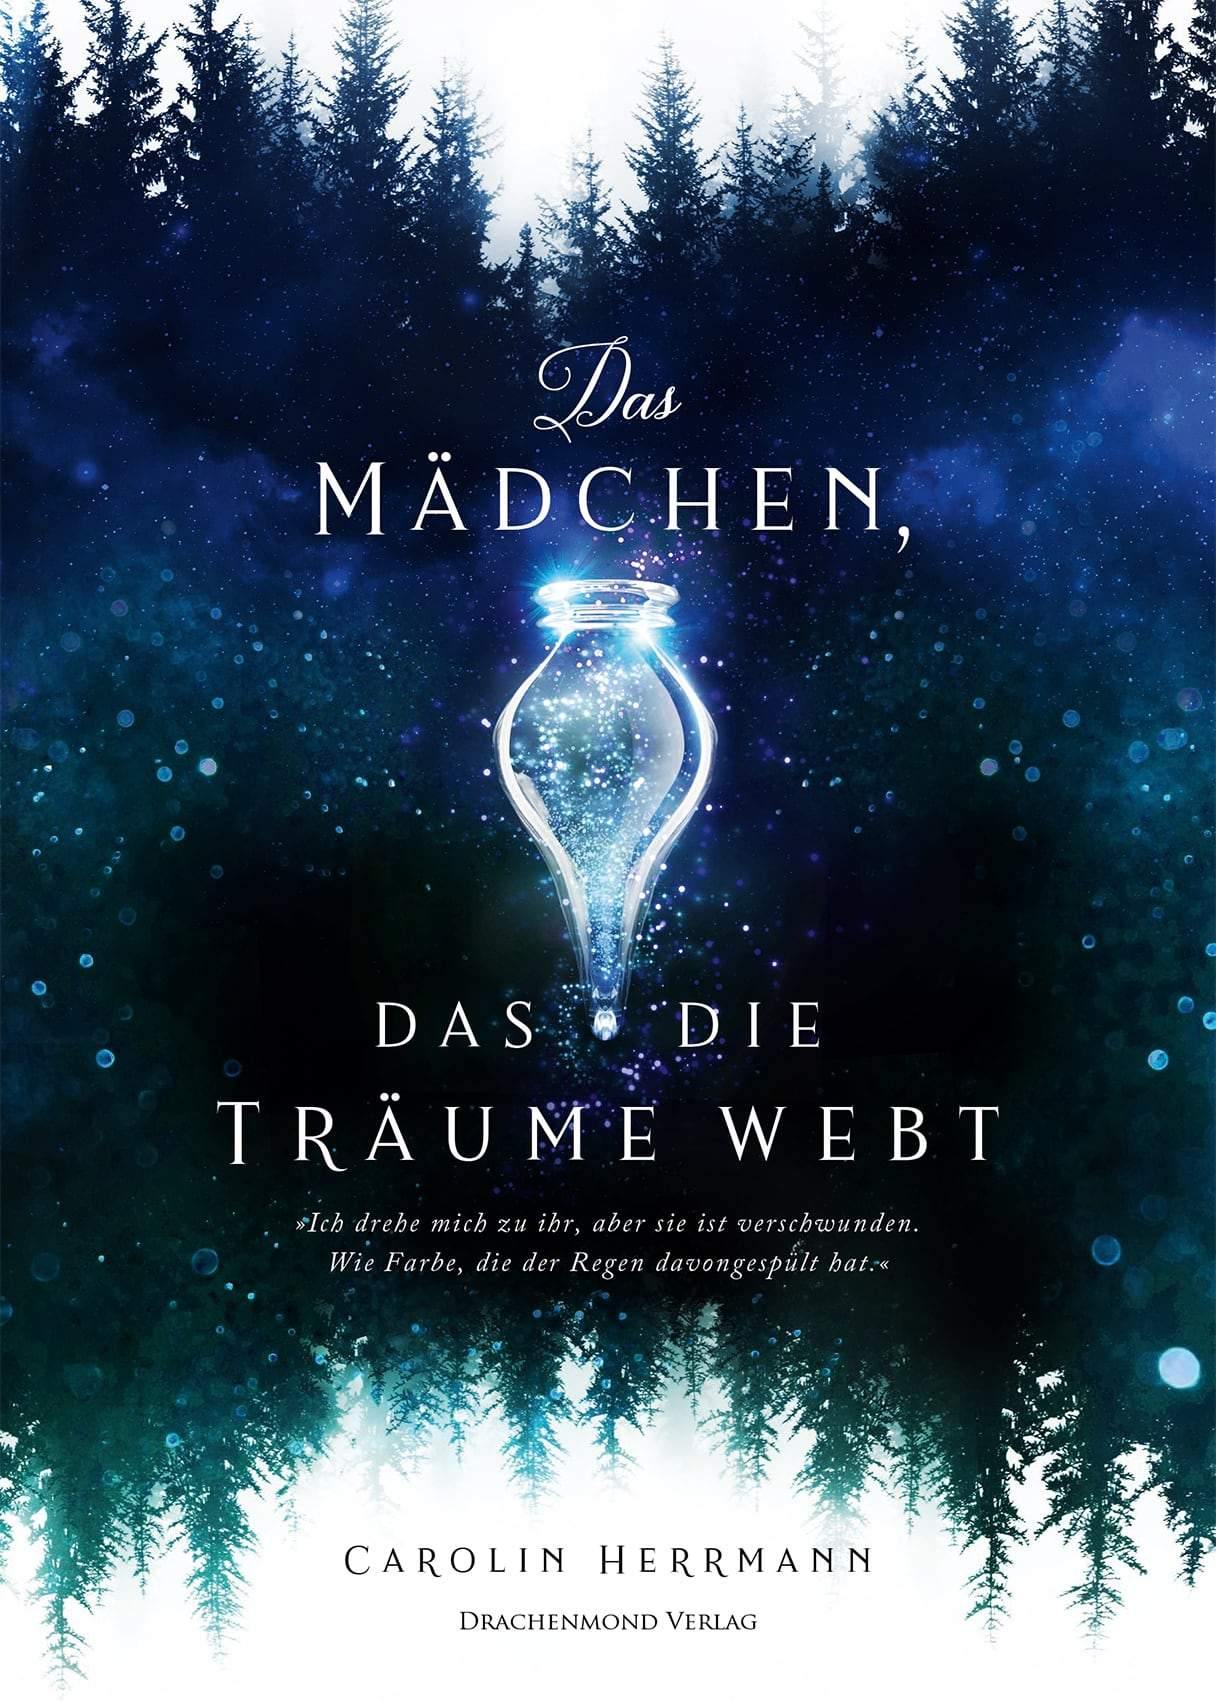 Das Mädchen, das die Träume webt - Carolin Herrmann | Drachenmond Verlag